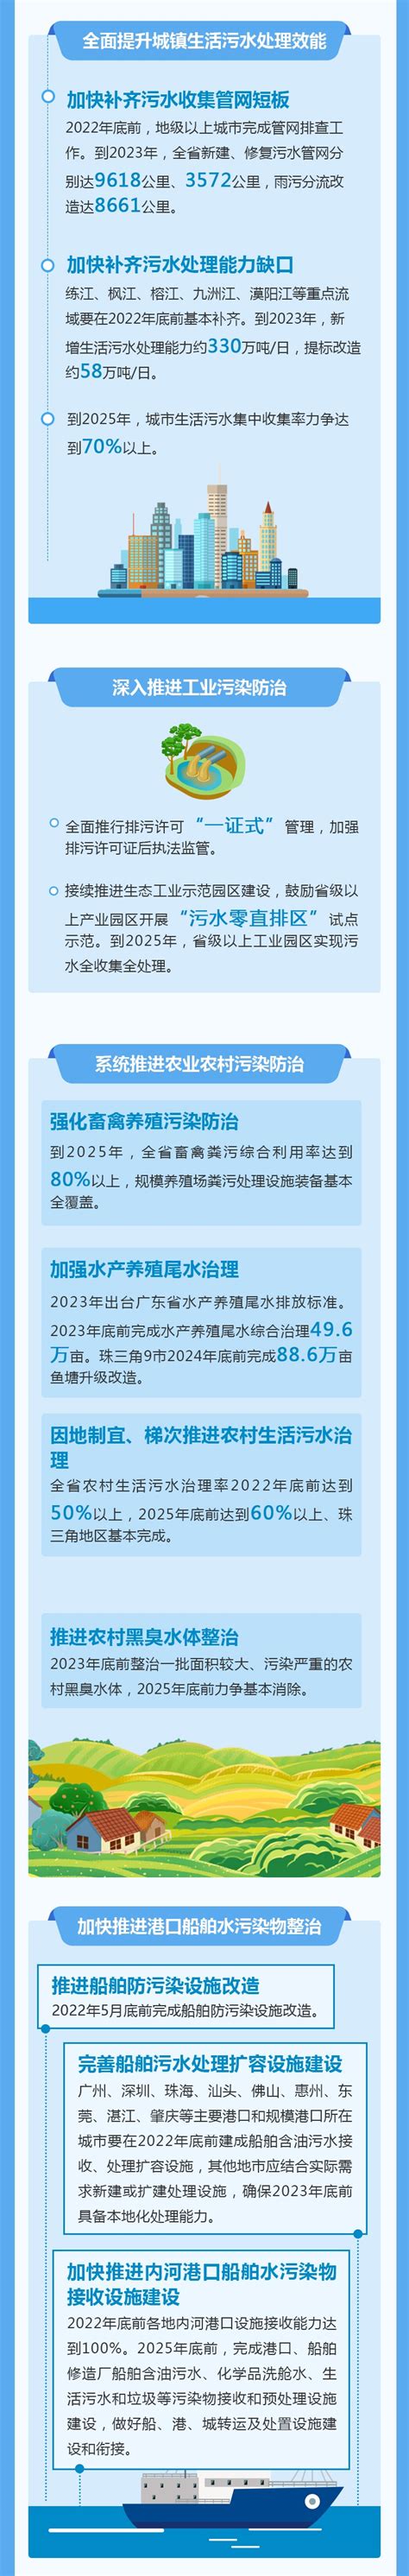 上海卫生健康发展“十四五”规划出炉!4方面12项重点任务,有你关心的吗?_医疗